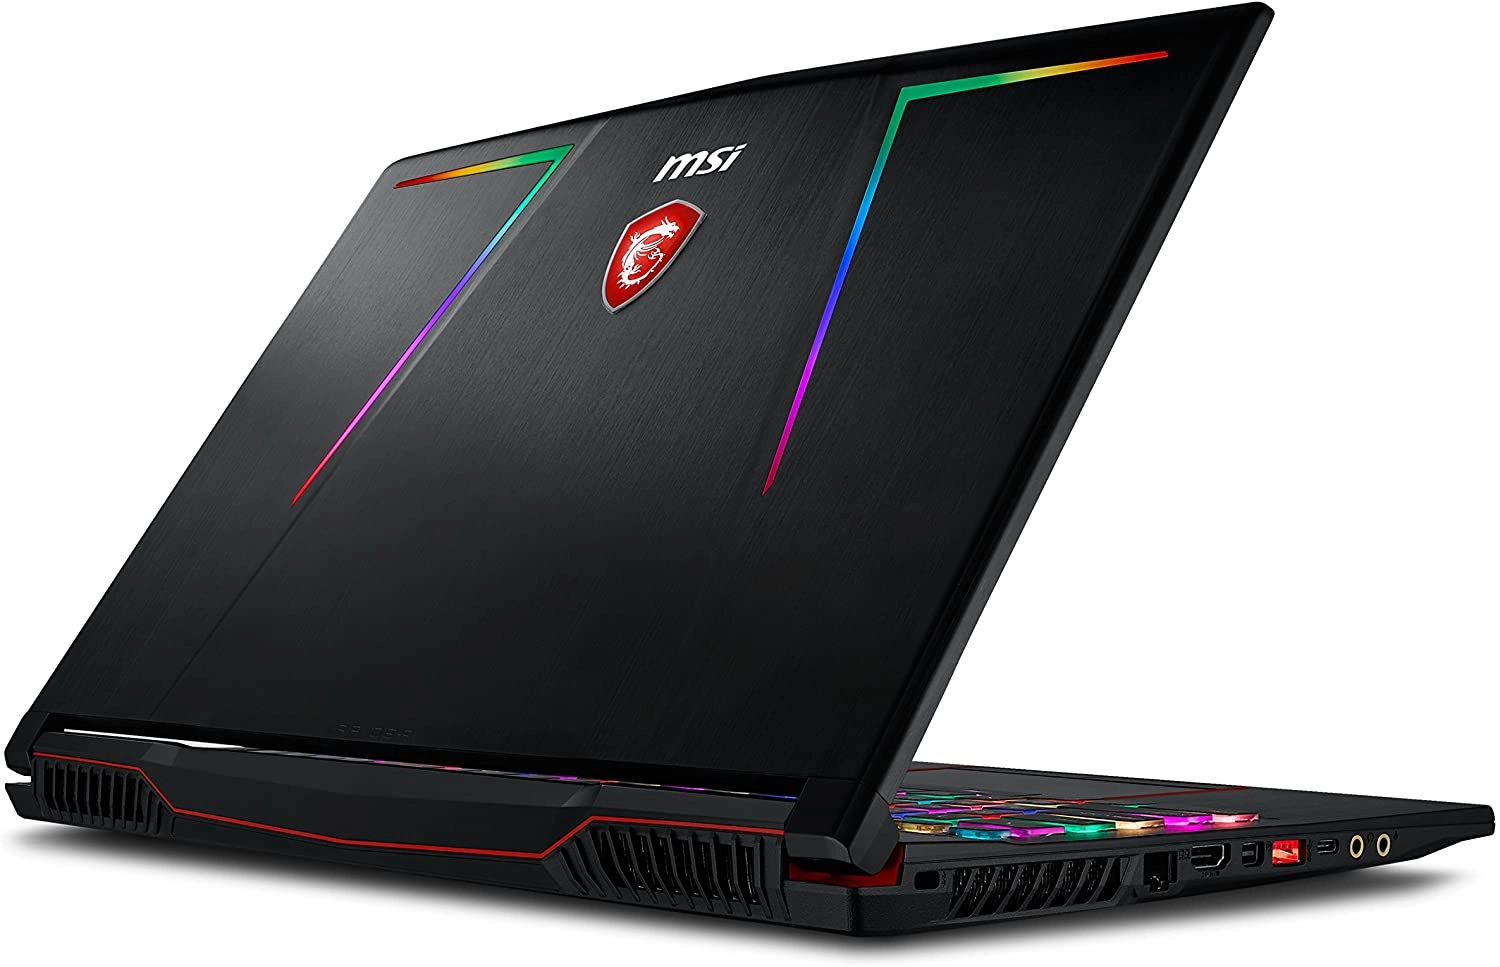 MSI GE63 Raider RGB-1050 laptop image